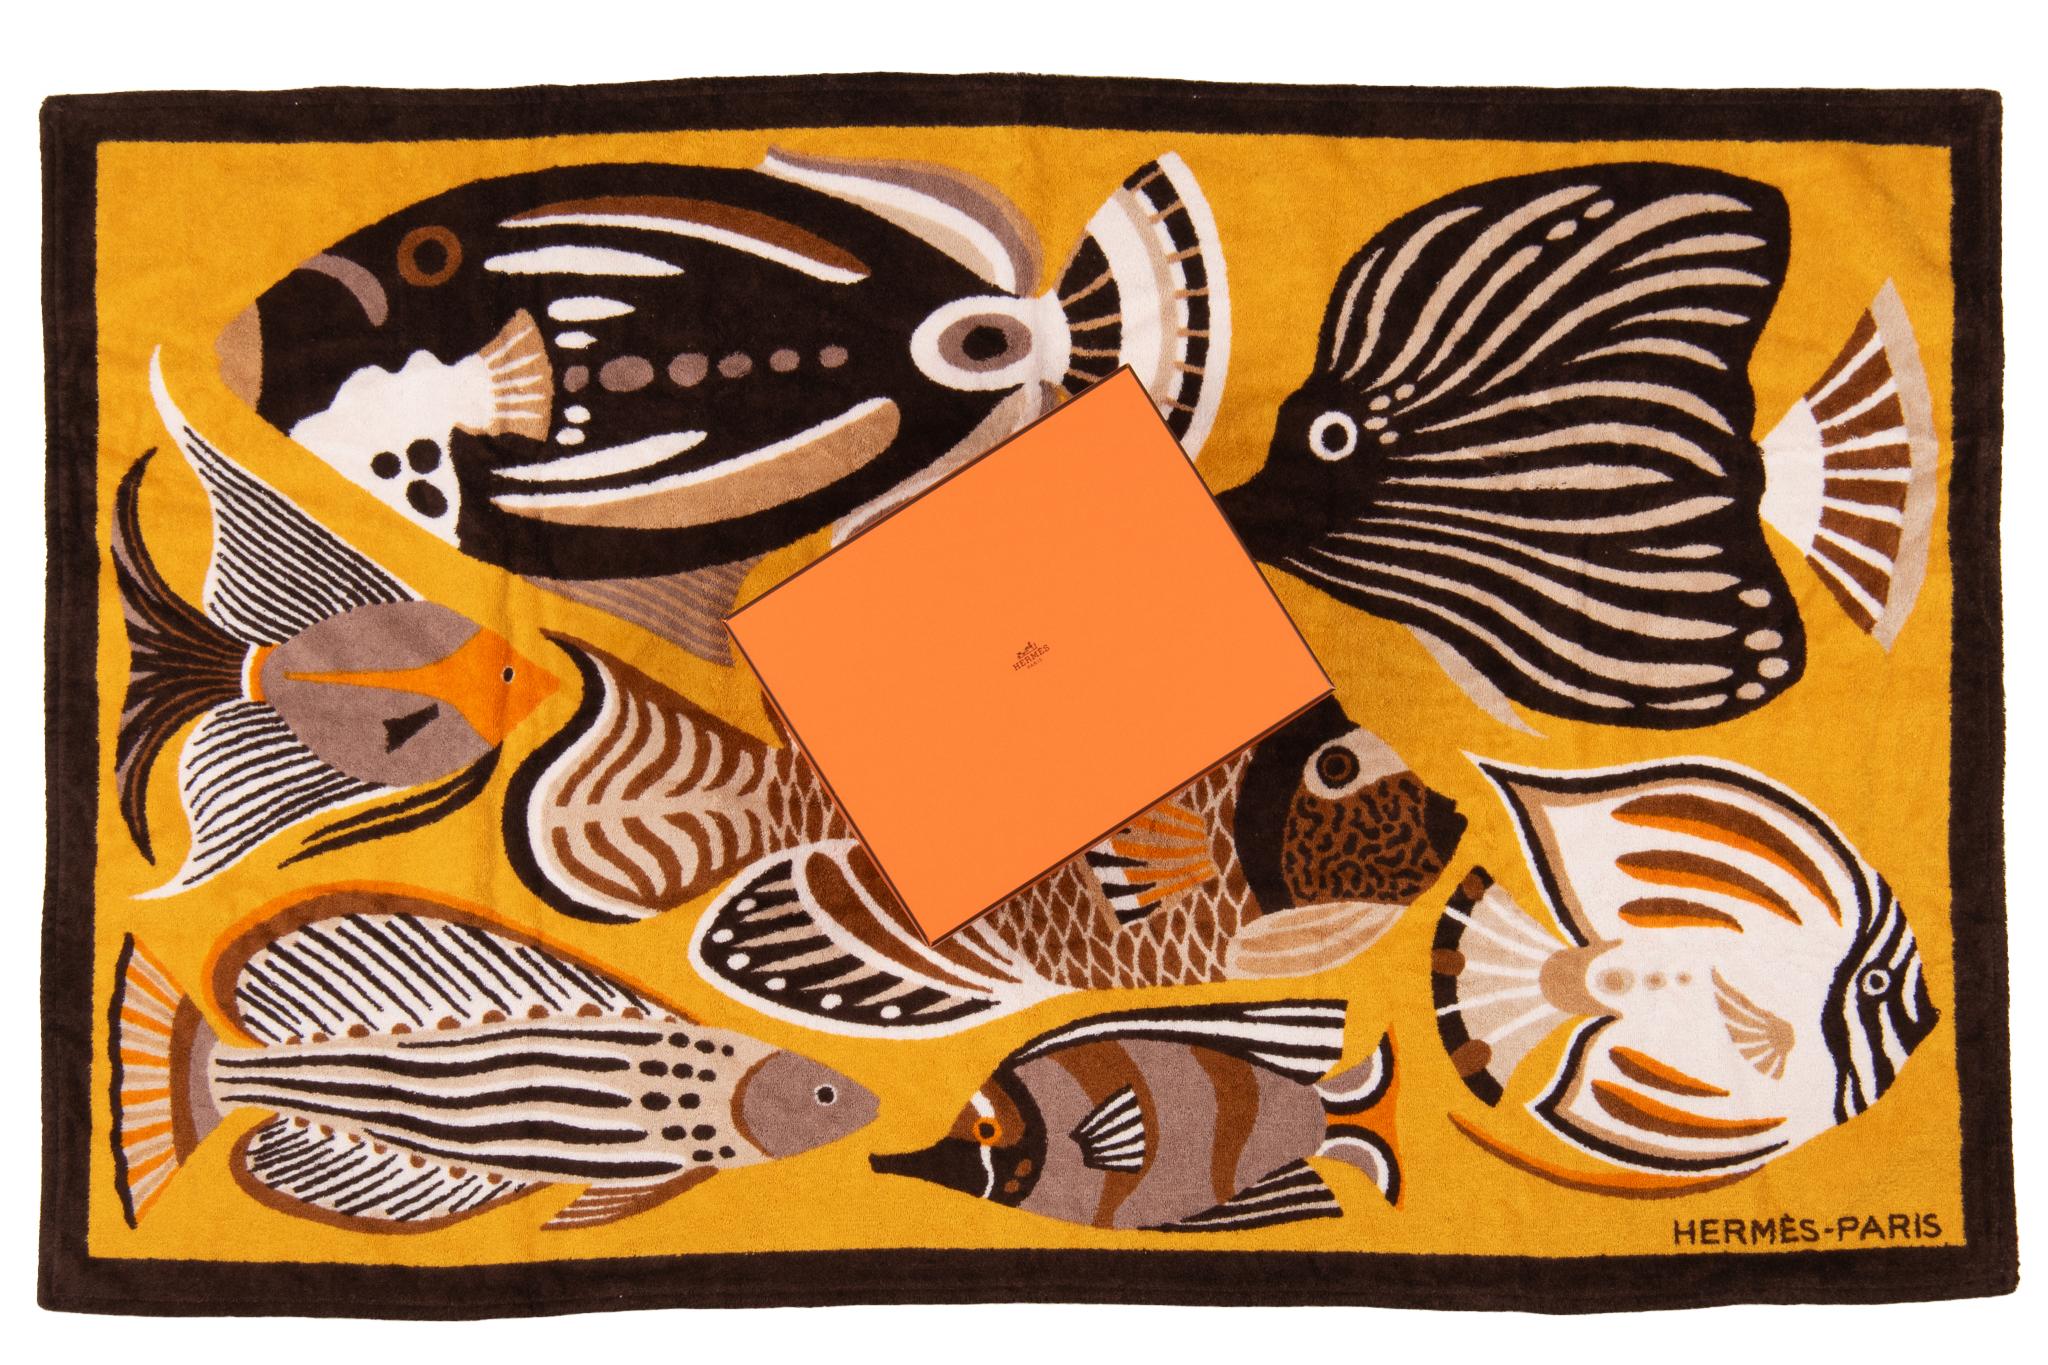 Hermès Fisch Strandtuch. Das Muster zeigt mehrere Fische in verschiedenen Farben. Das Stück ist neu und wird in der Originalverpackung geliefert.